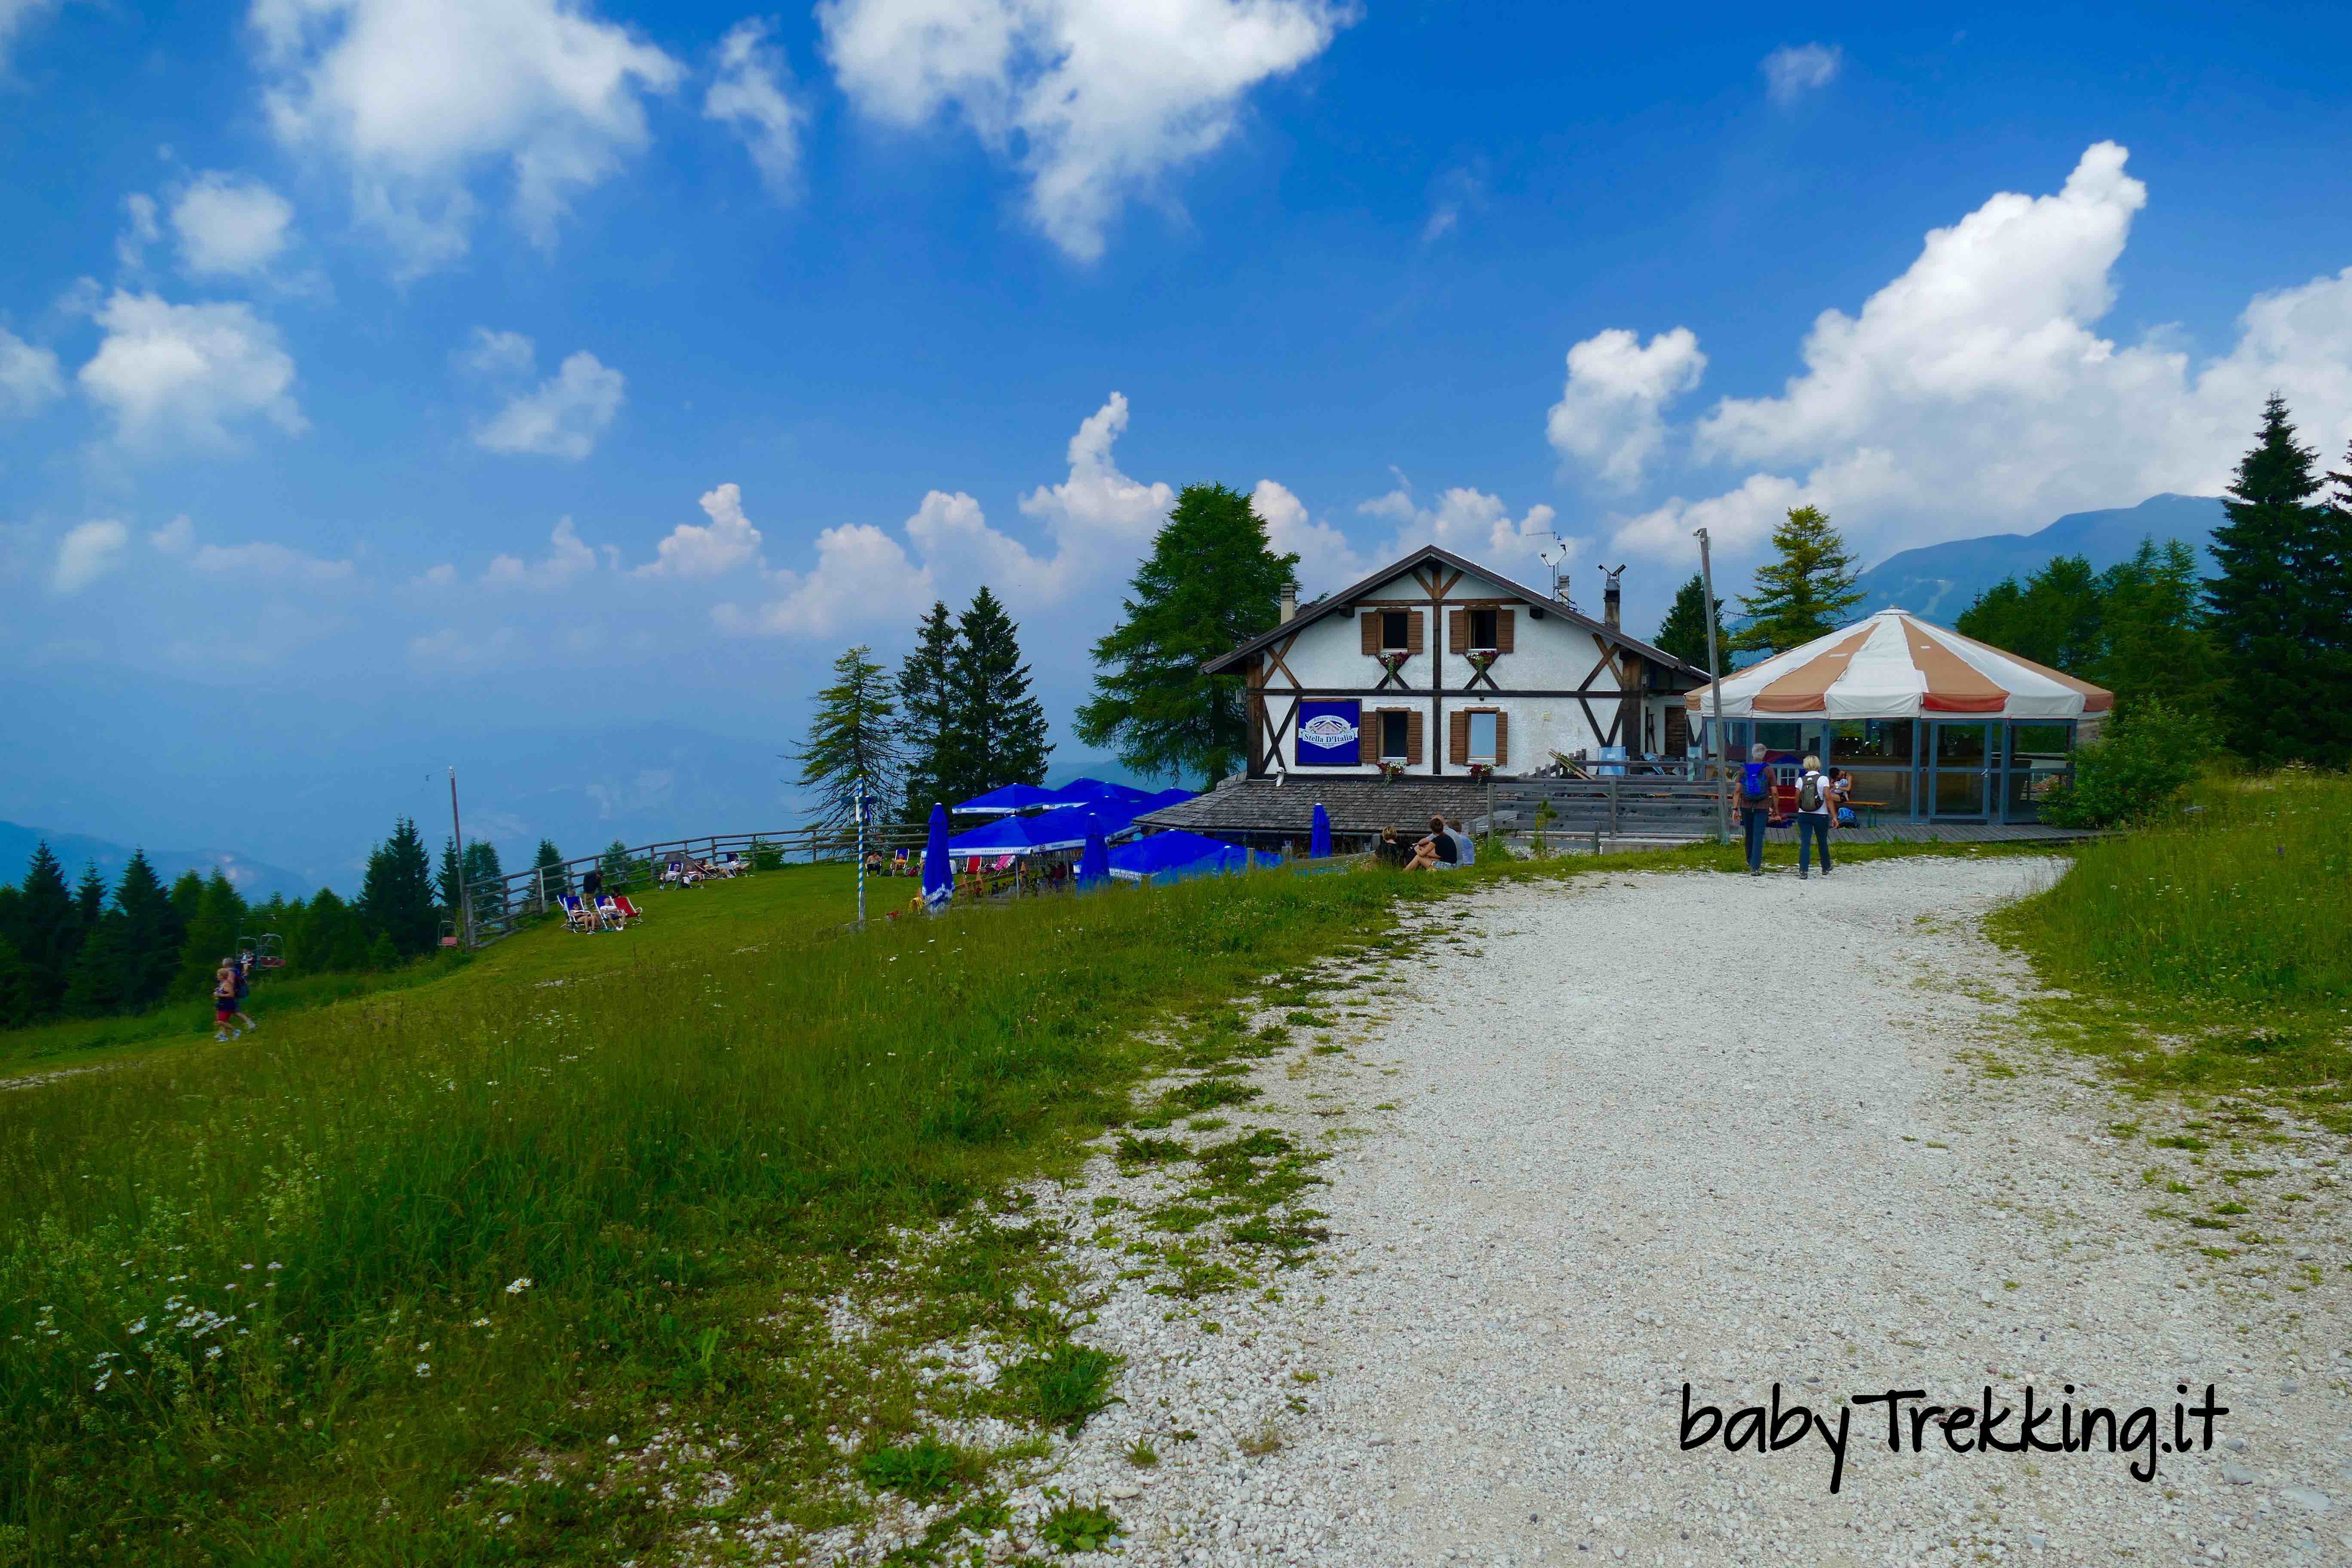 Rifugio Stella d'Italia da Passo Coe: col passeggino sull'Alpe Cimbra